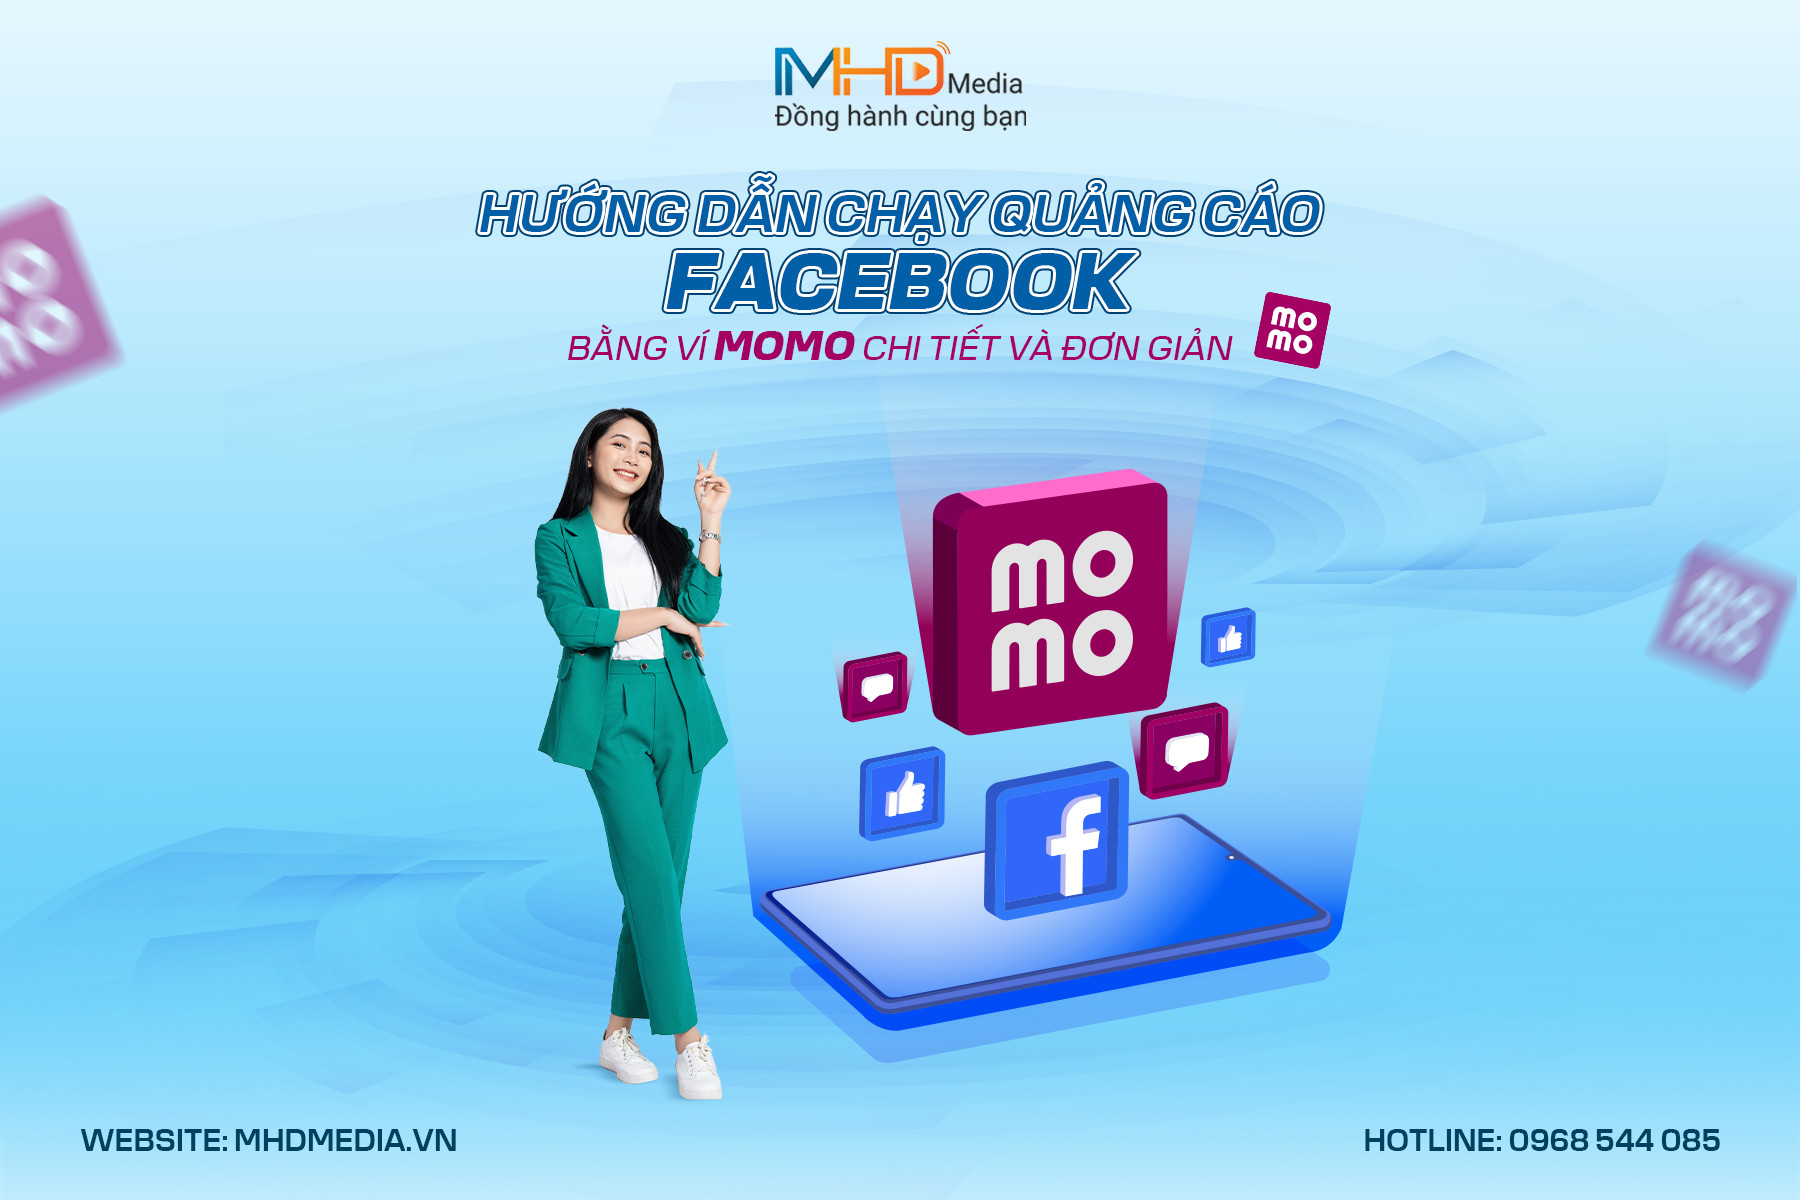 Hướng dẫn chạy quảng cáo Facebook bằng ví Momo